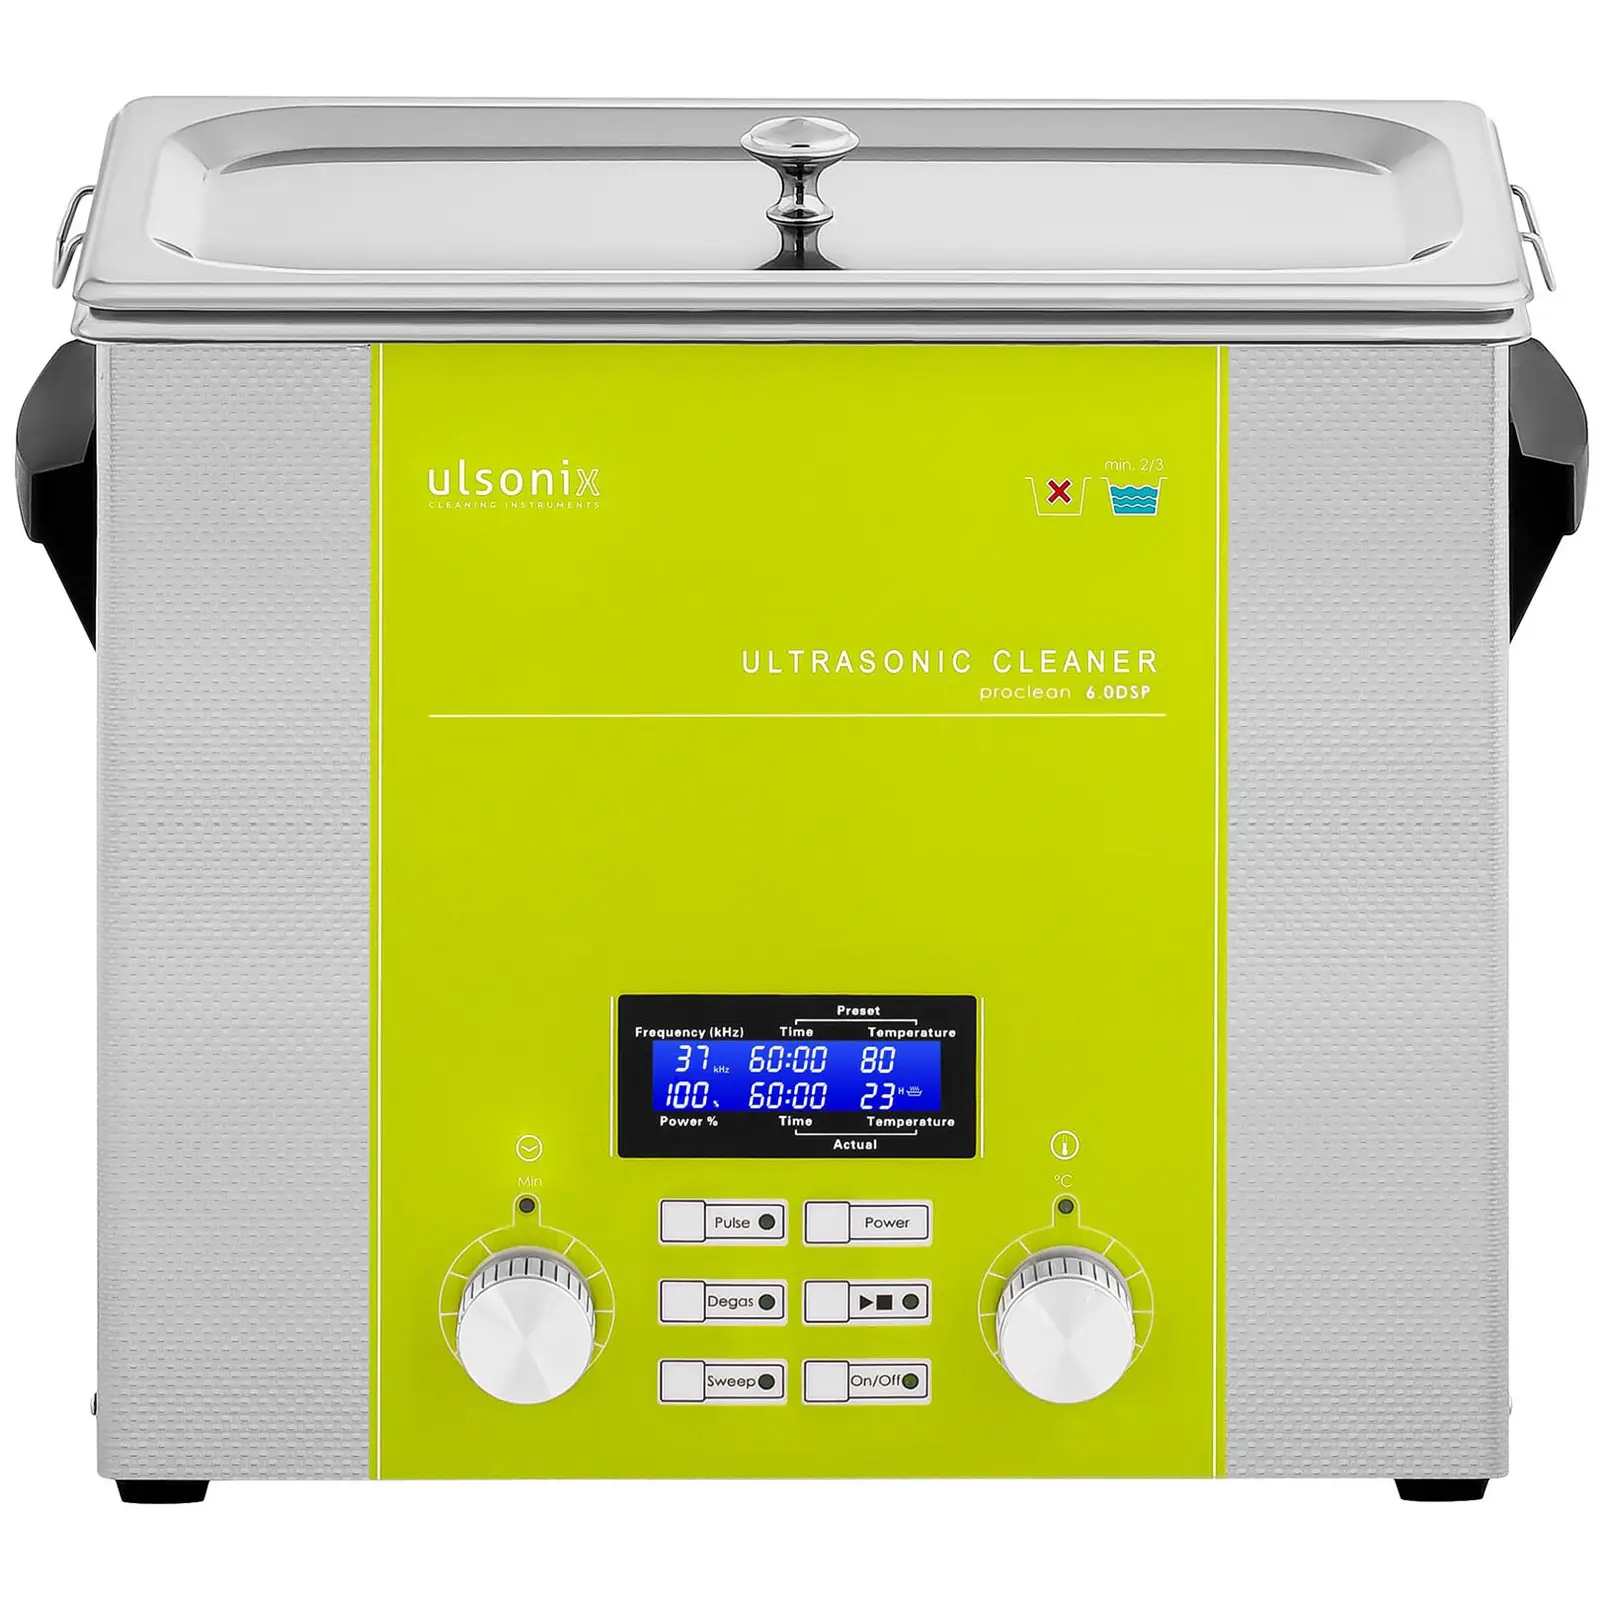 Ultralydvasker - 6 liter - degas - sweep - pulse